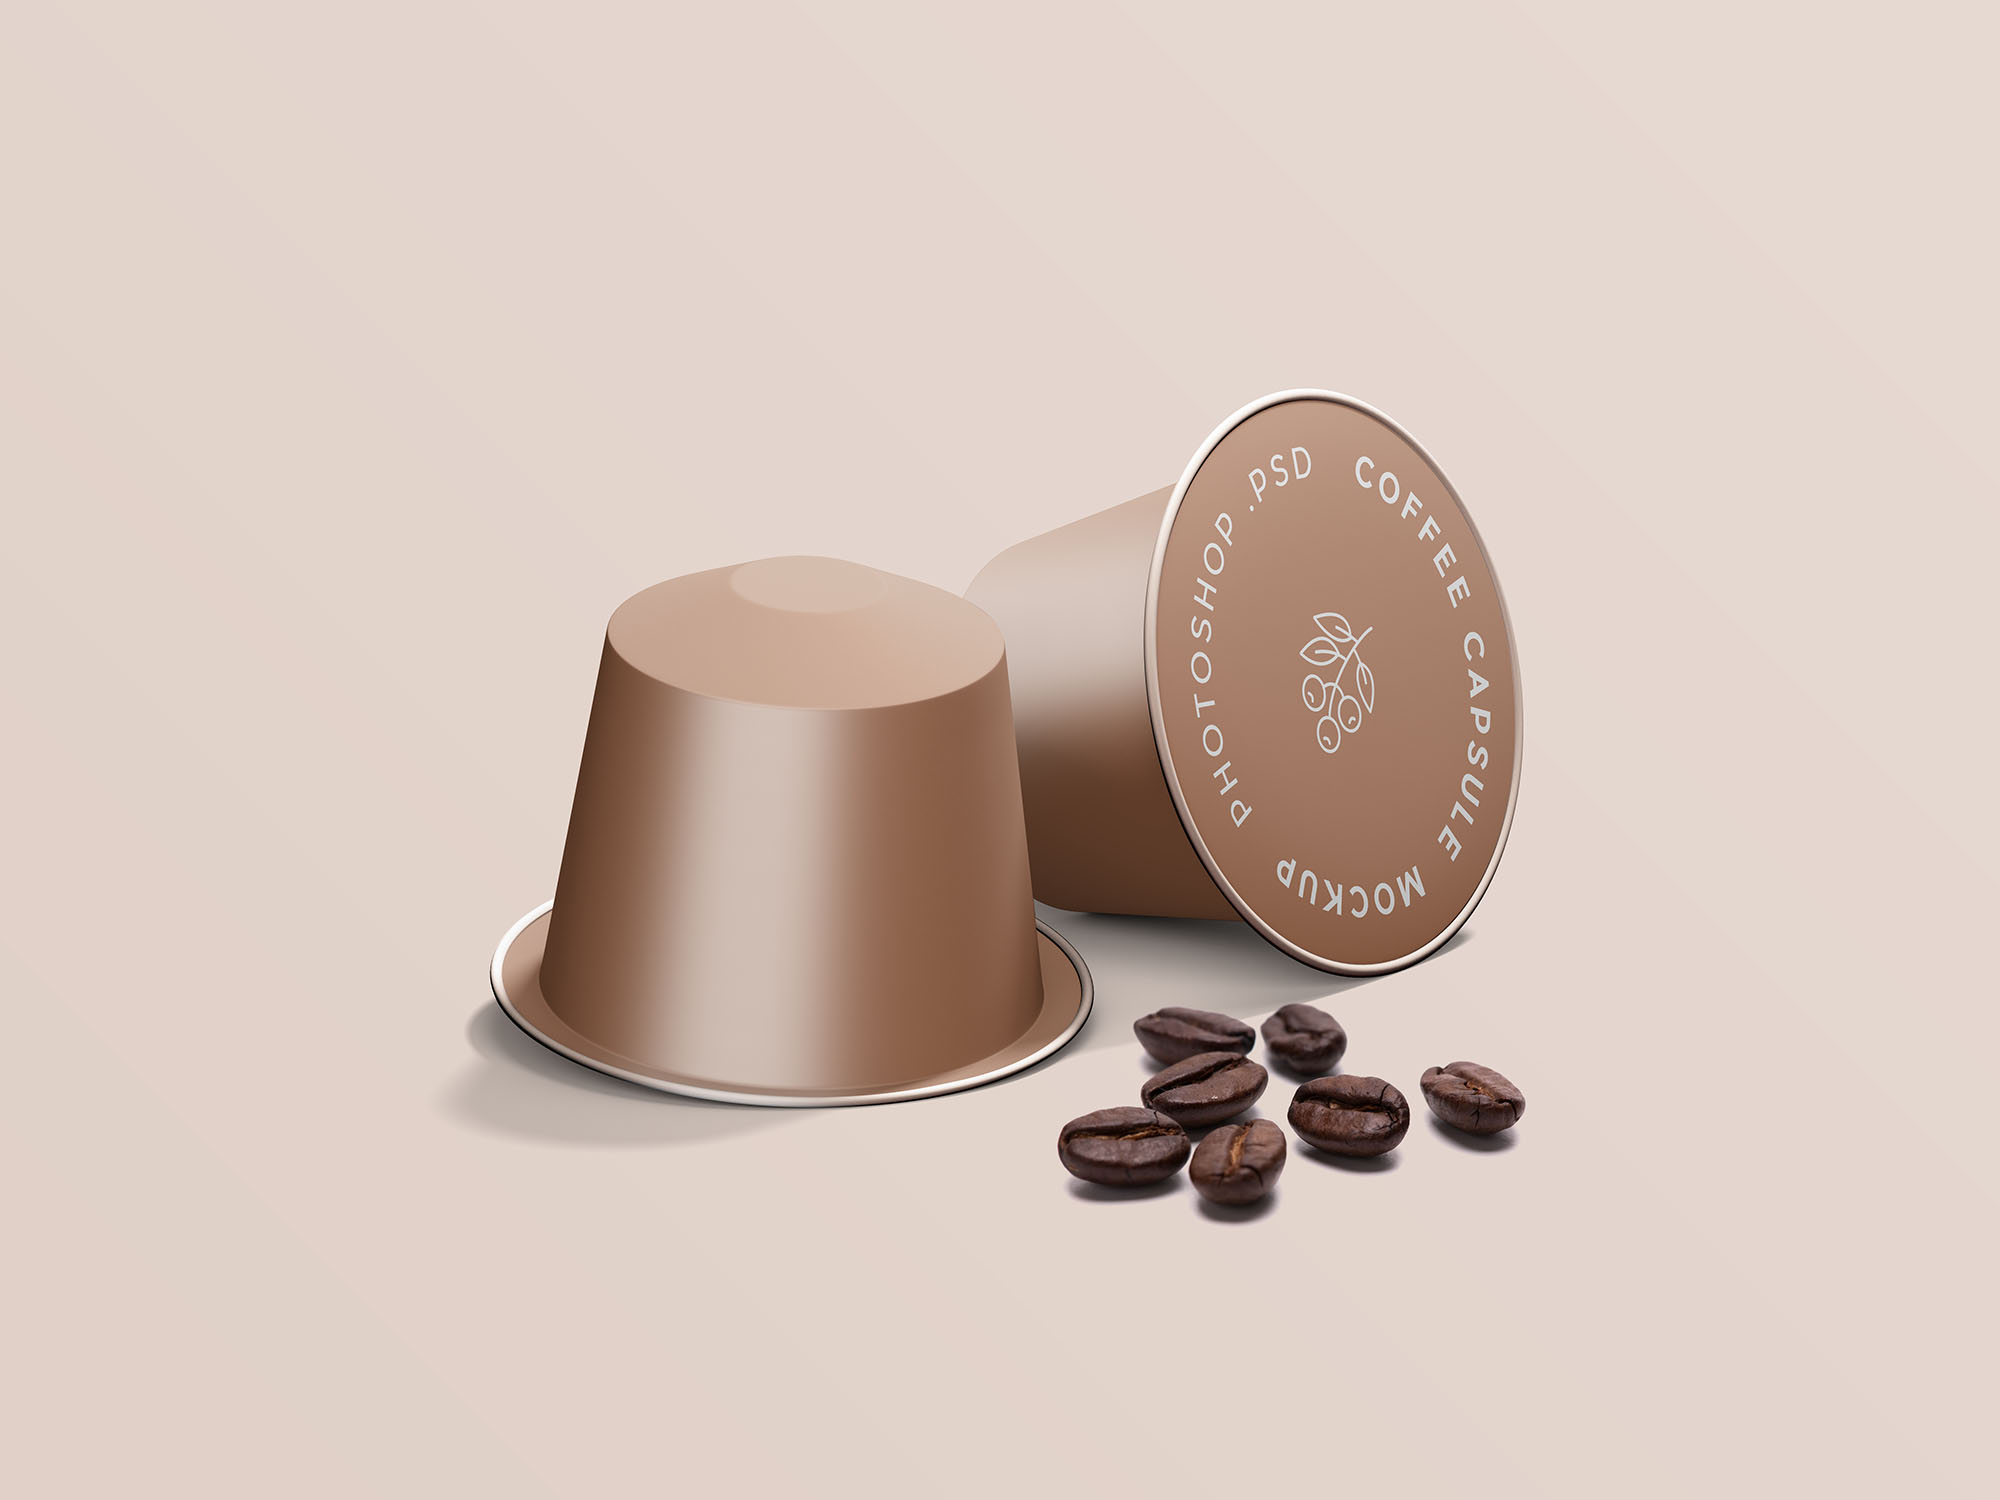 浓缩咖啡胶囊外观设计效果图样机 Espresso Coffe